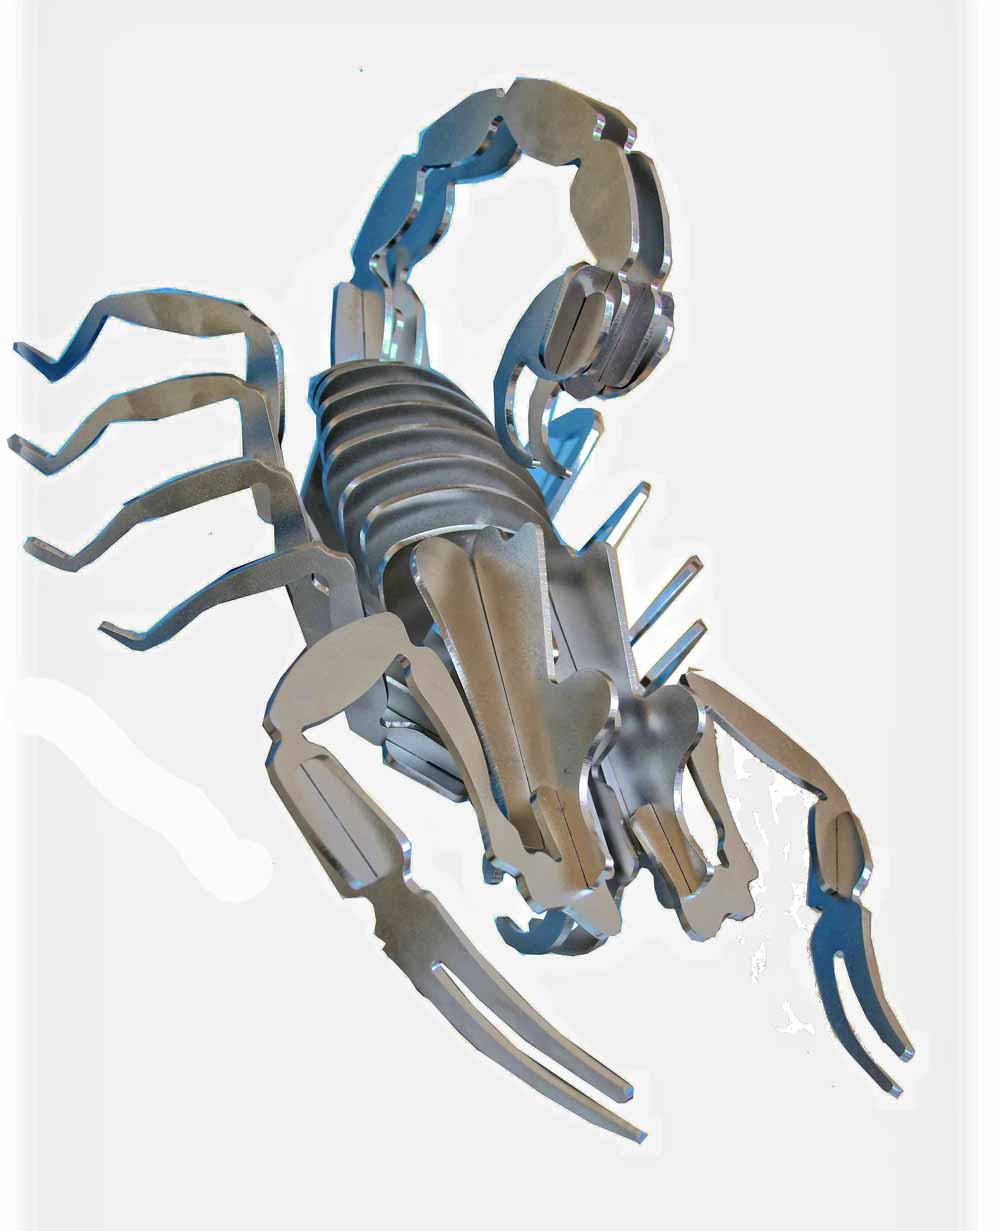 Feile und Säge waren gestern: Diesen stählernen Skorpion haben Handwerker mit einem Plasamschneider geformt. Jetzt kriecht er durch die Handwerkskammer Dresden. Foto: Heiko Weckbrodt